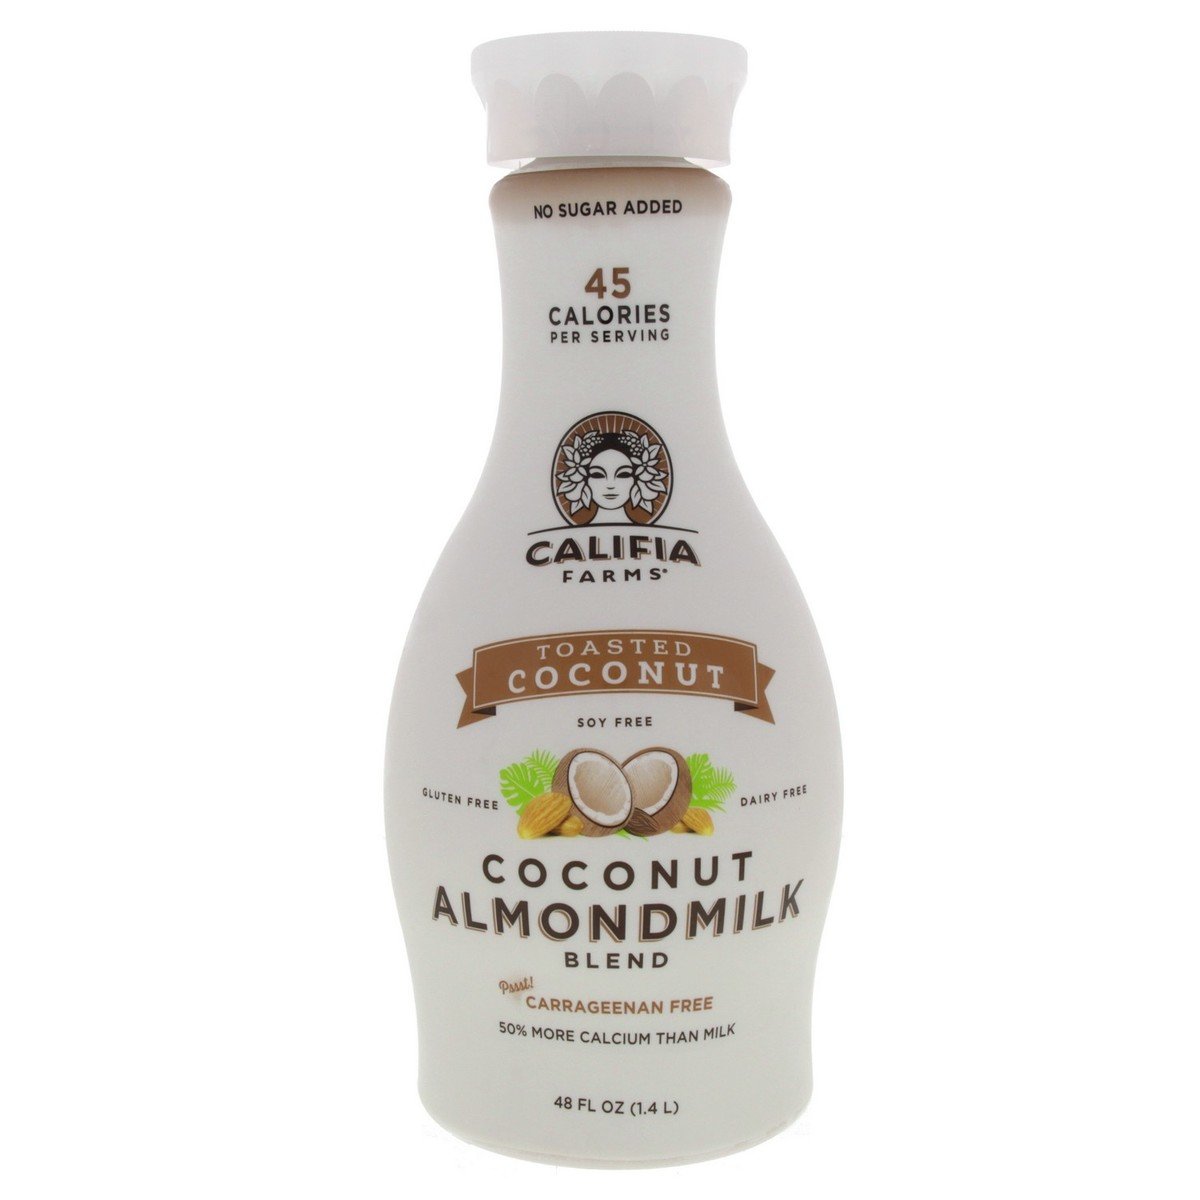 Califia Farm's Coconut Almond Milk 1.4 Litres